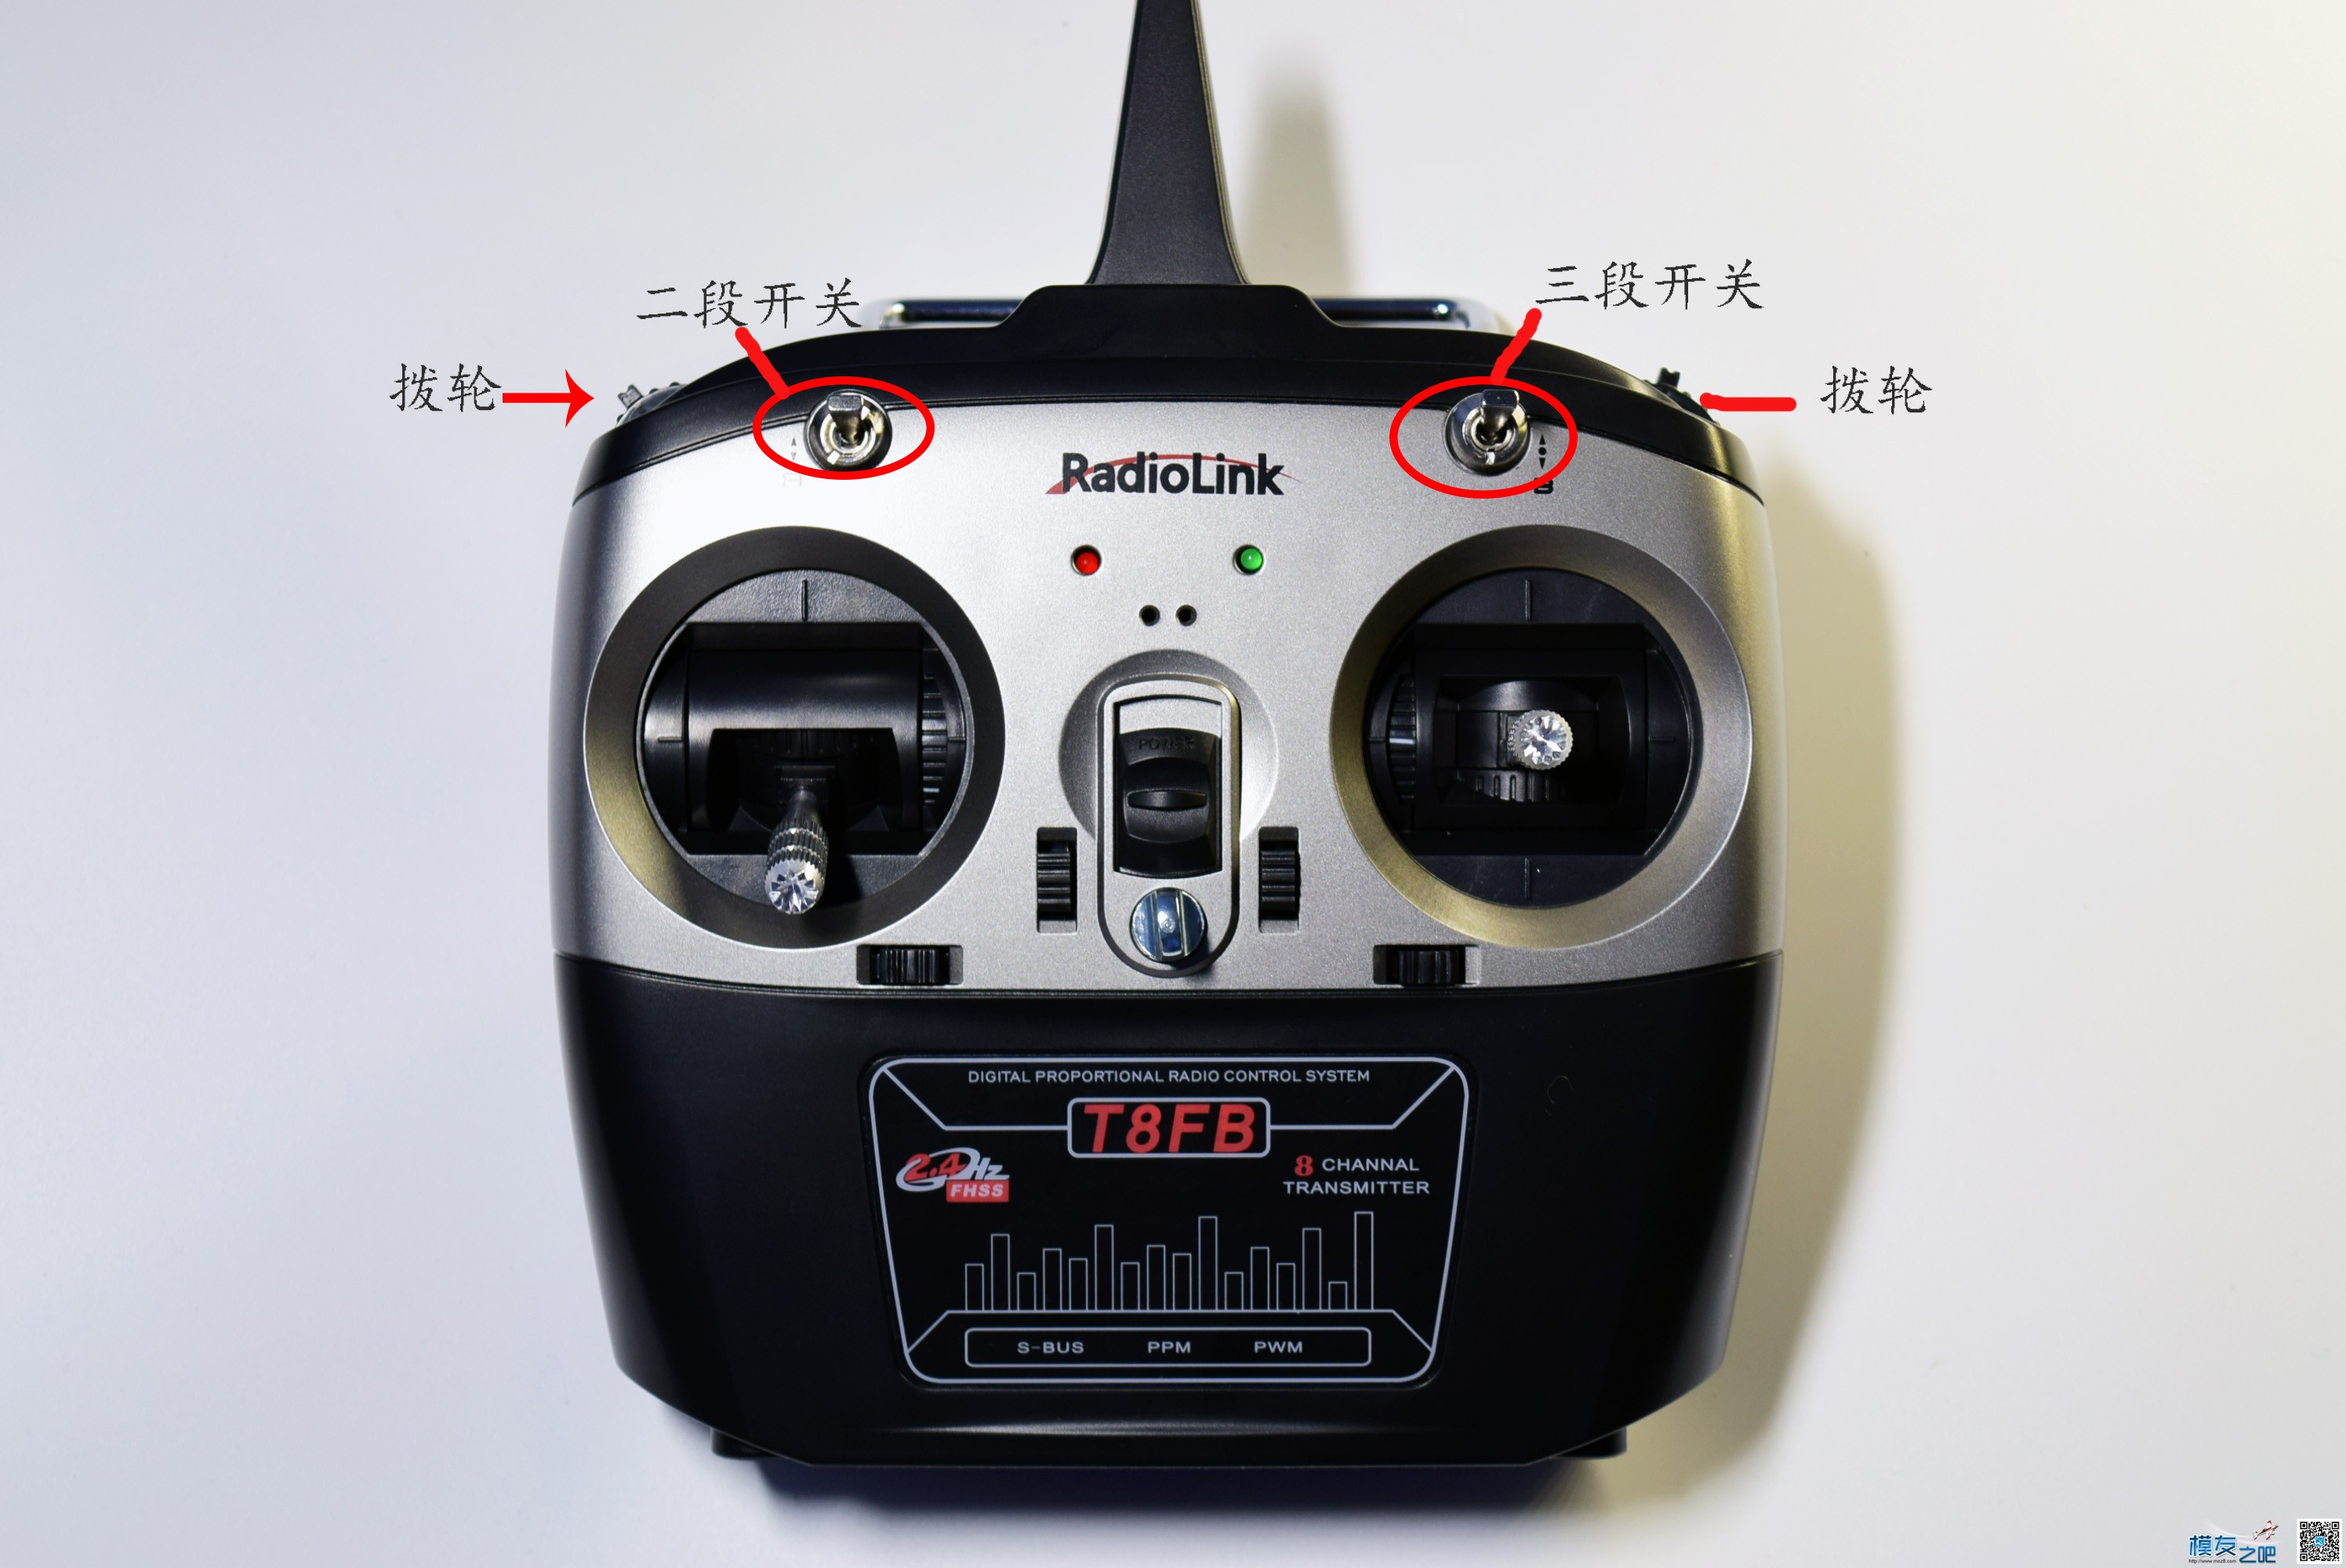 乐迪T8FB测评调参和升级讲解 穿越机,固定翼,电池,飞控,遥控器 作者:多云 4253 